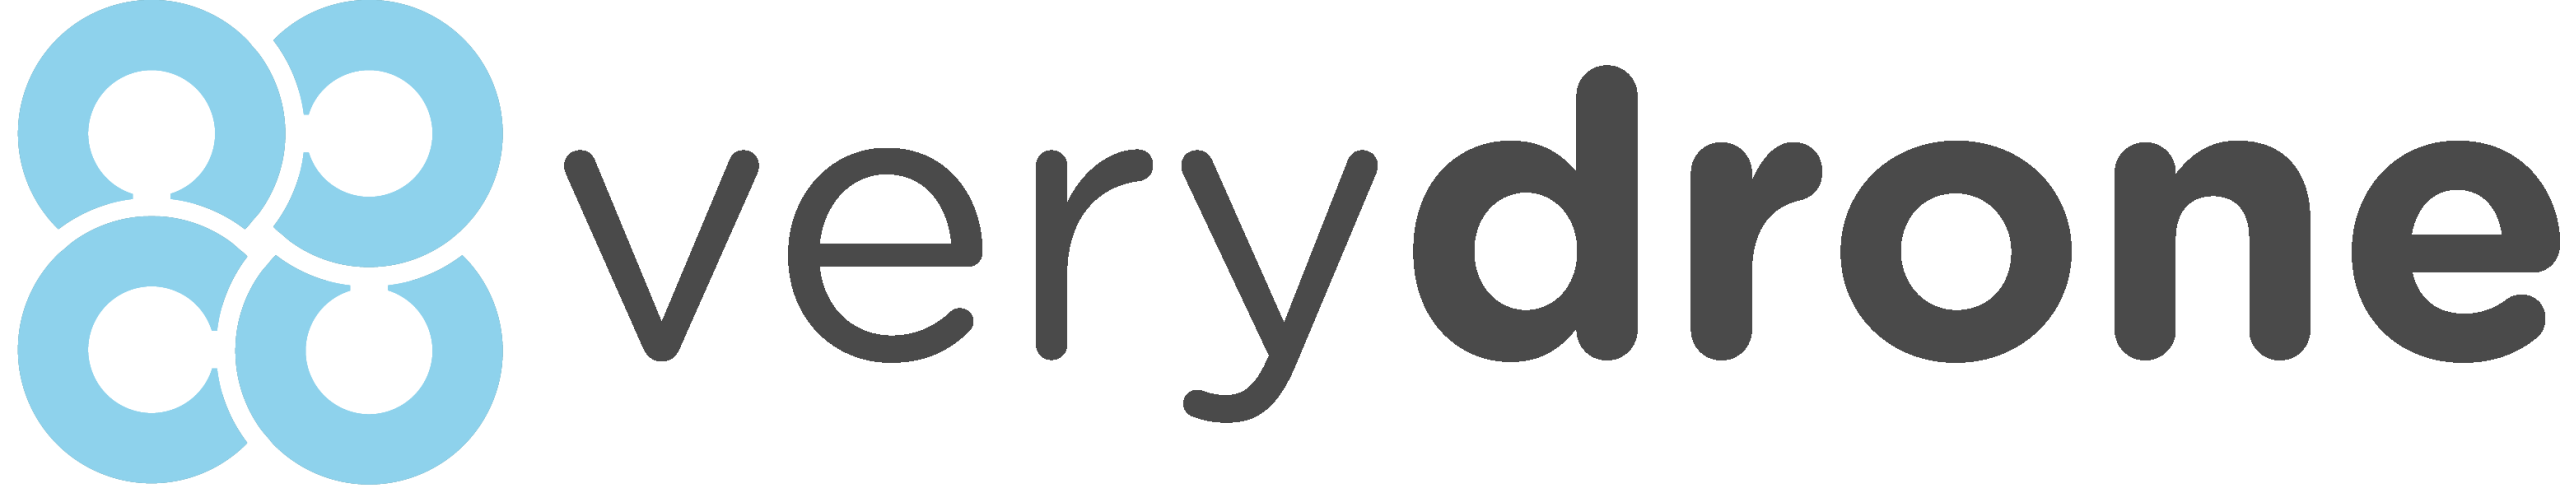 verydrone logo